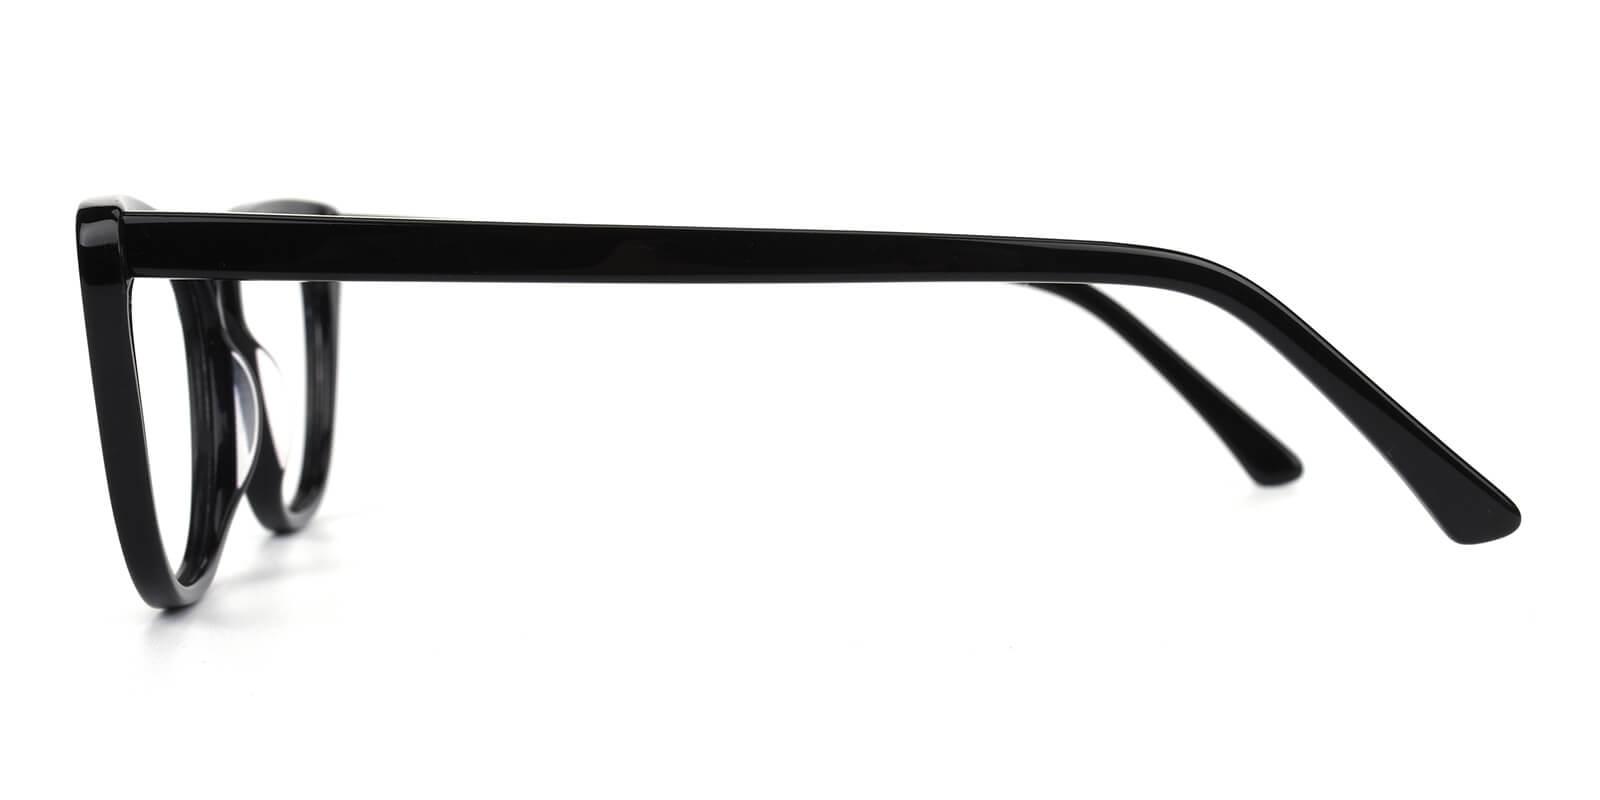 Tersaki-Black-Cat / Rectangle-Acetate-Eyeglasses-detail